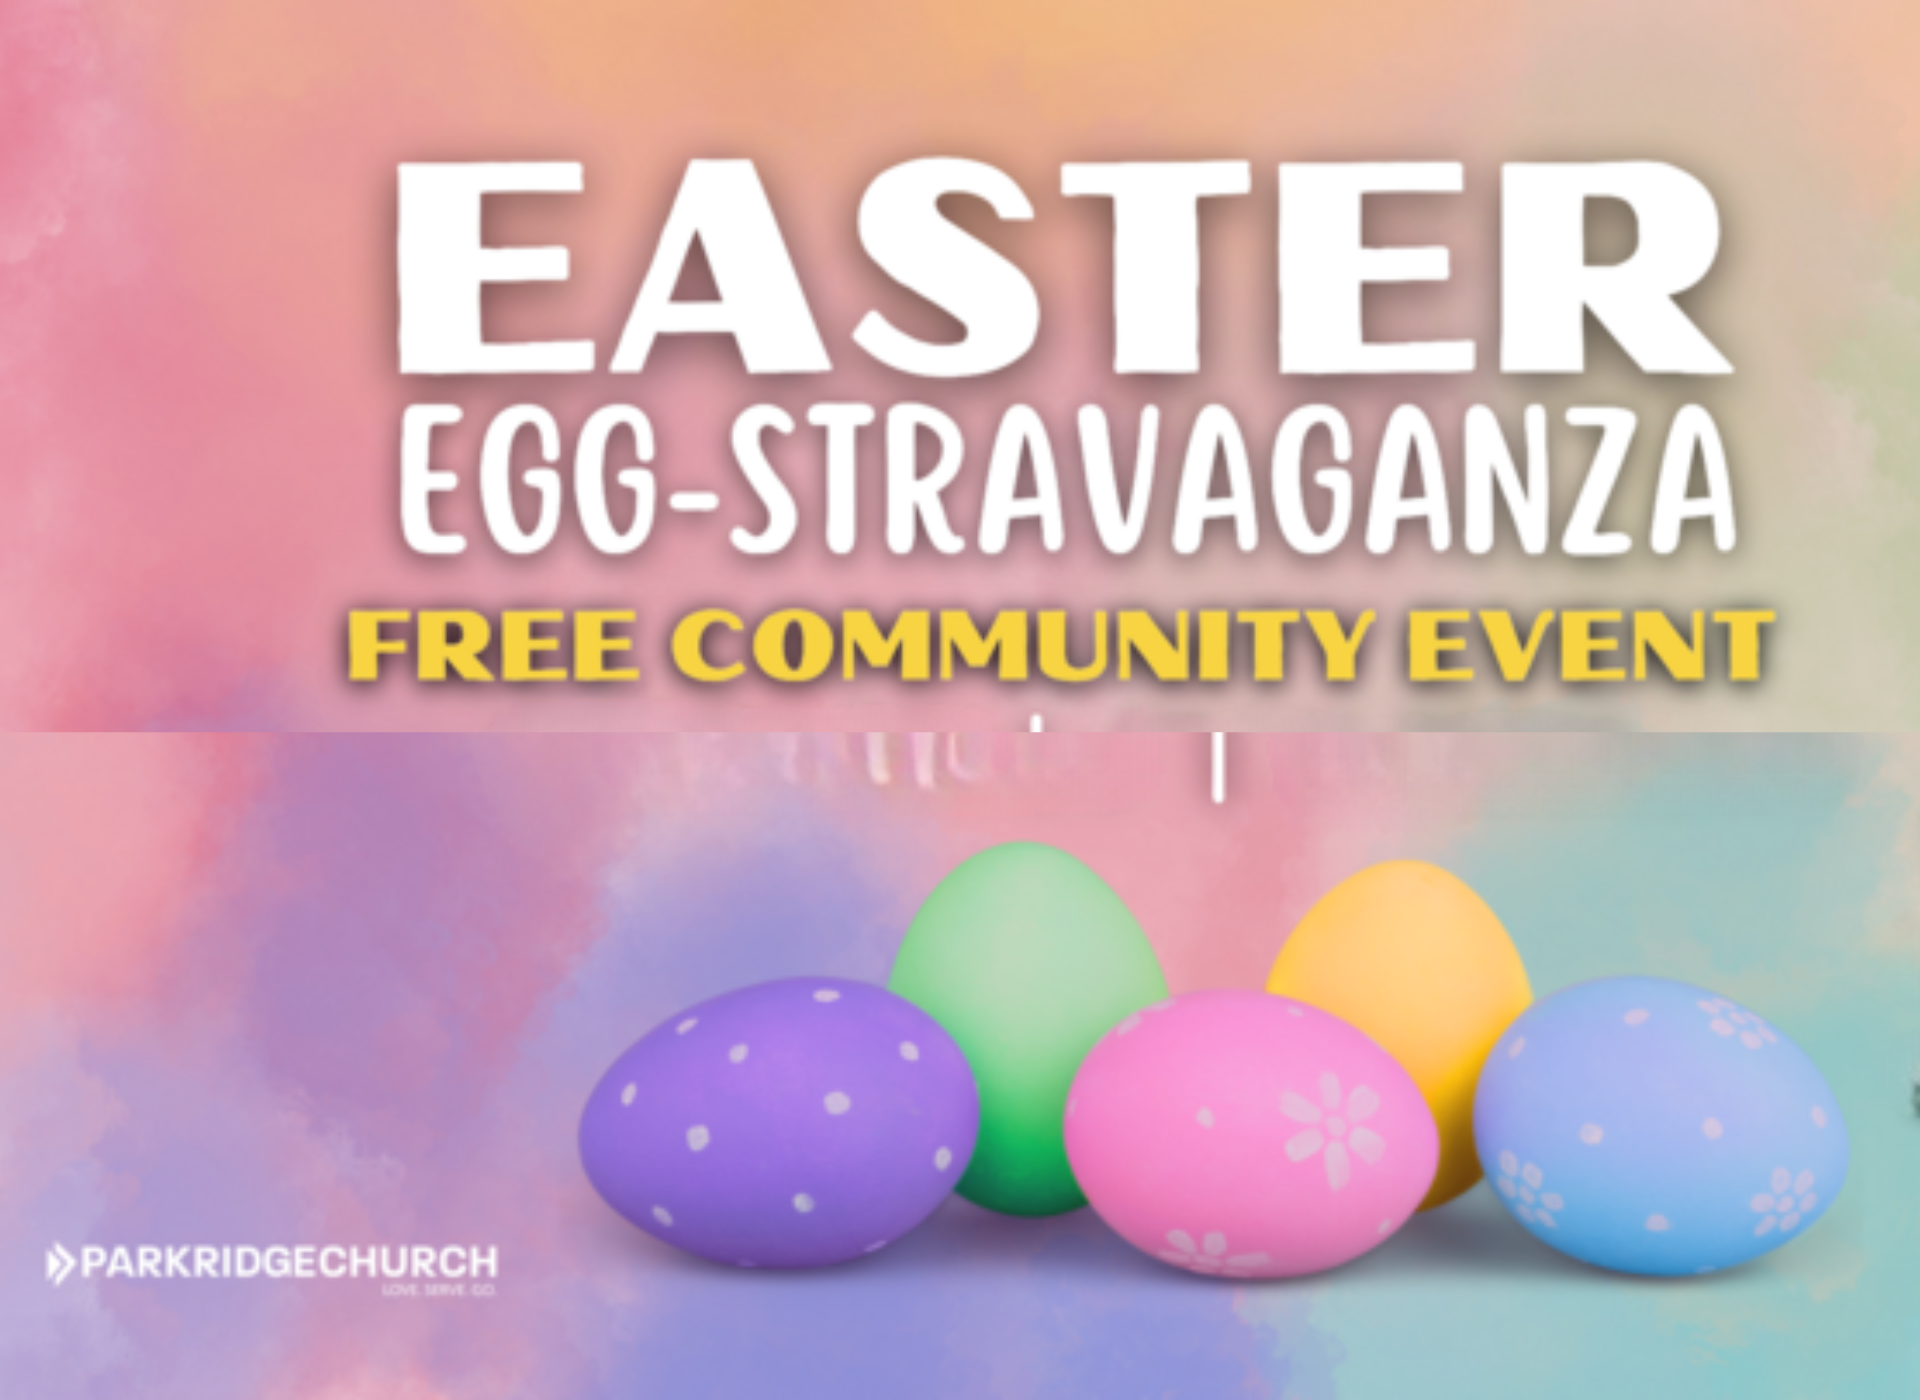 Parkridge Church - Easter Egg-stravaganza